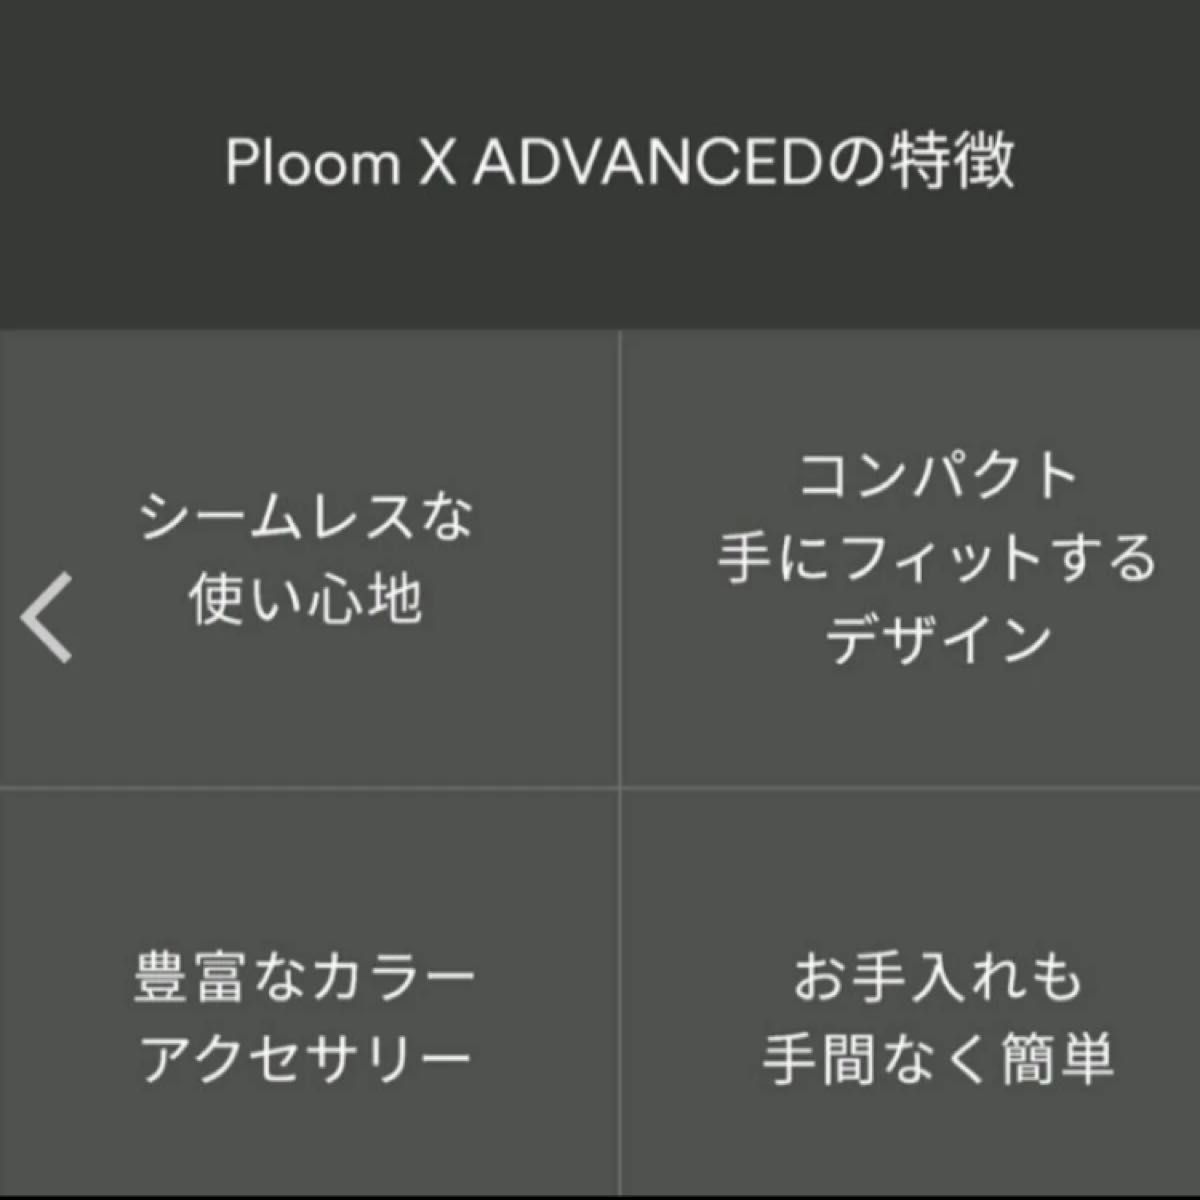 プルーム エックス アドバンスド スターターキット Ploom X ADVANCED 本体 プルームx シルバー 電子タバコ